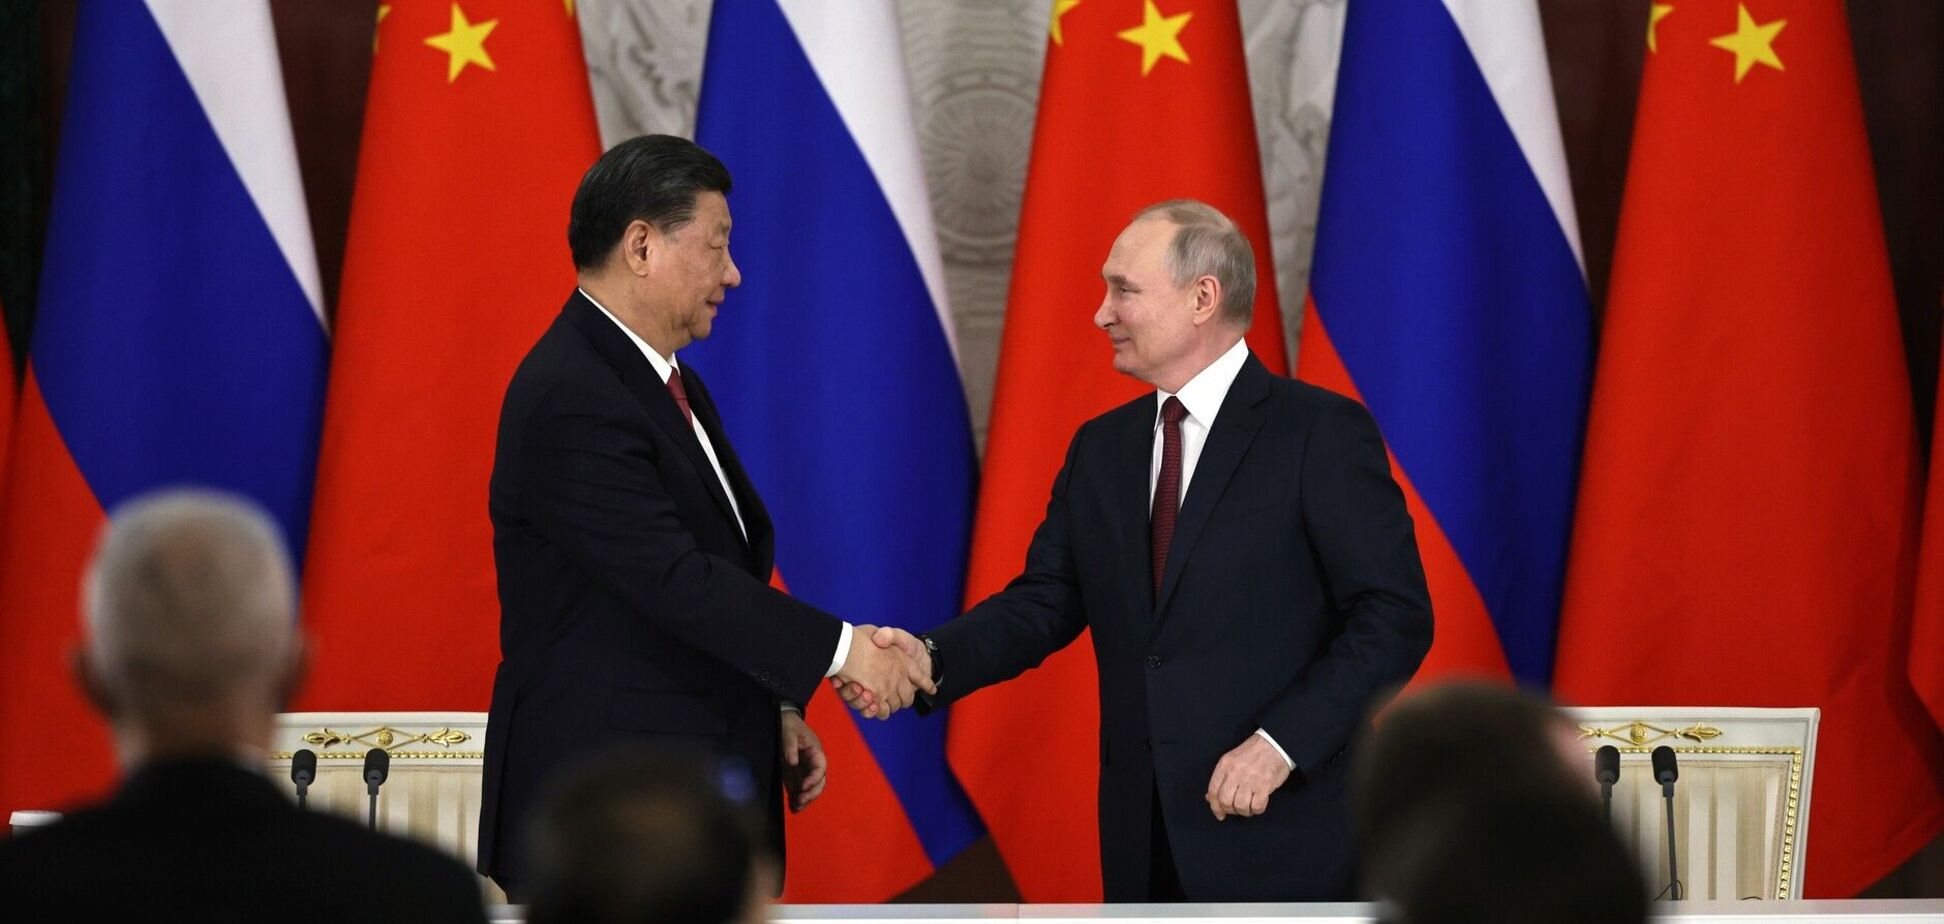 Китай предоставляет России спутниковые изображения военных объектов в Украине – Bloomberg